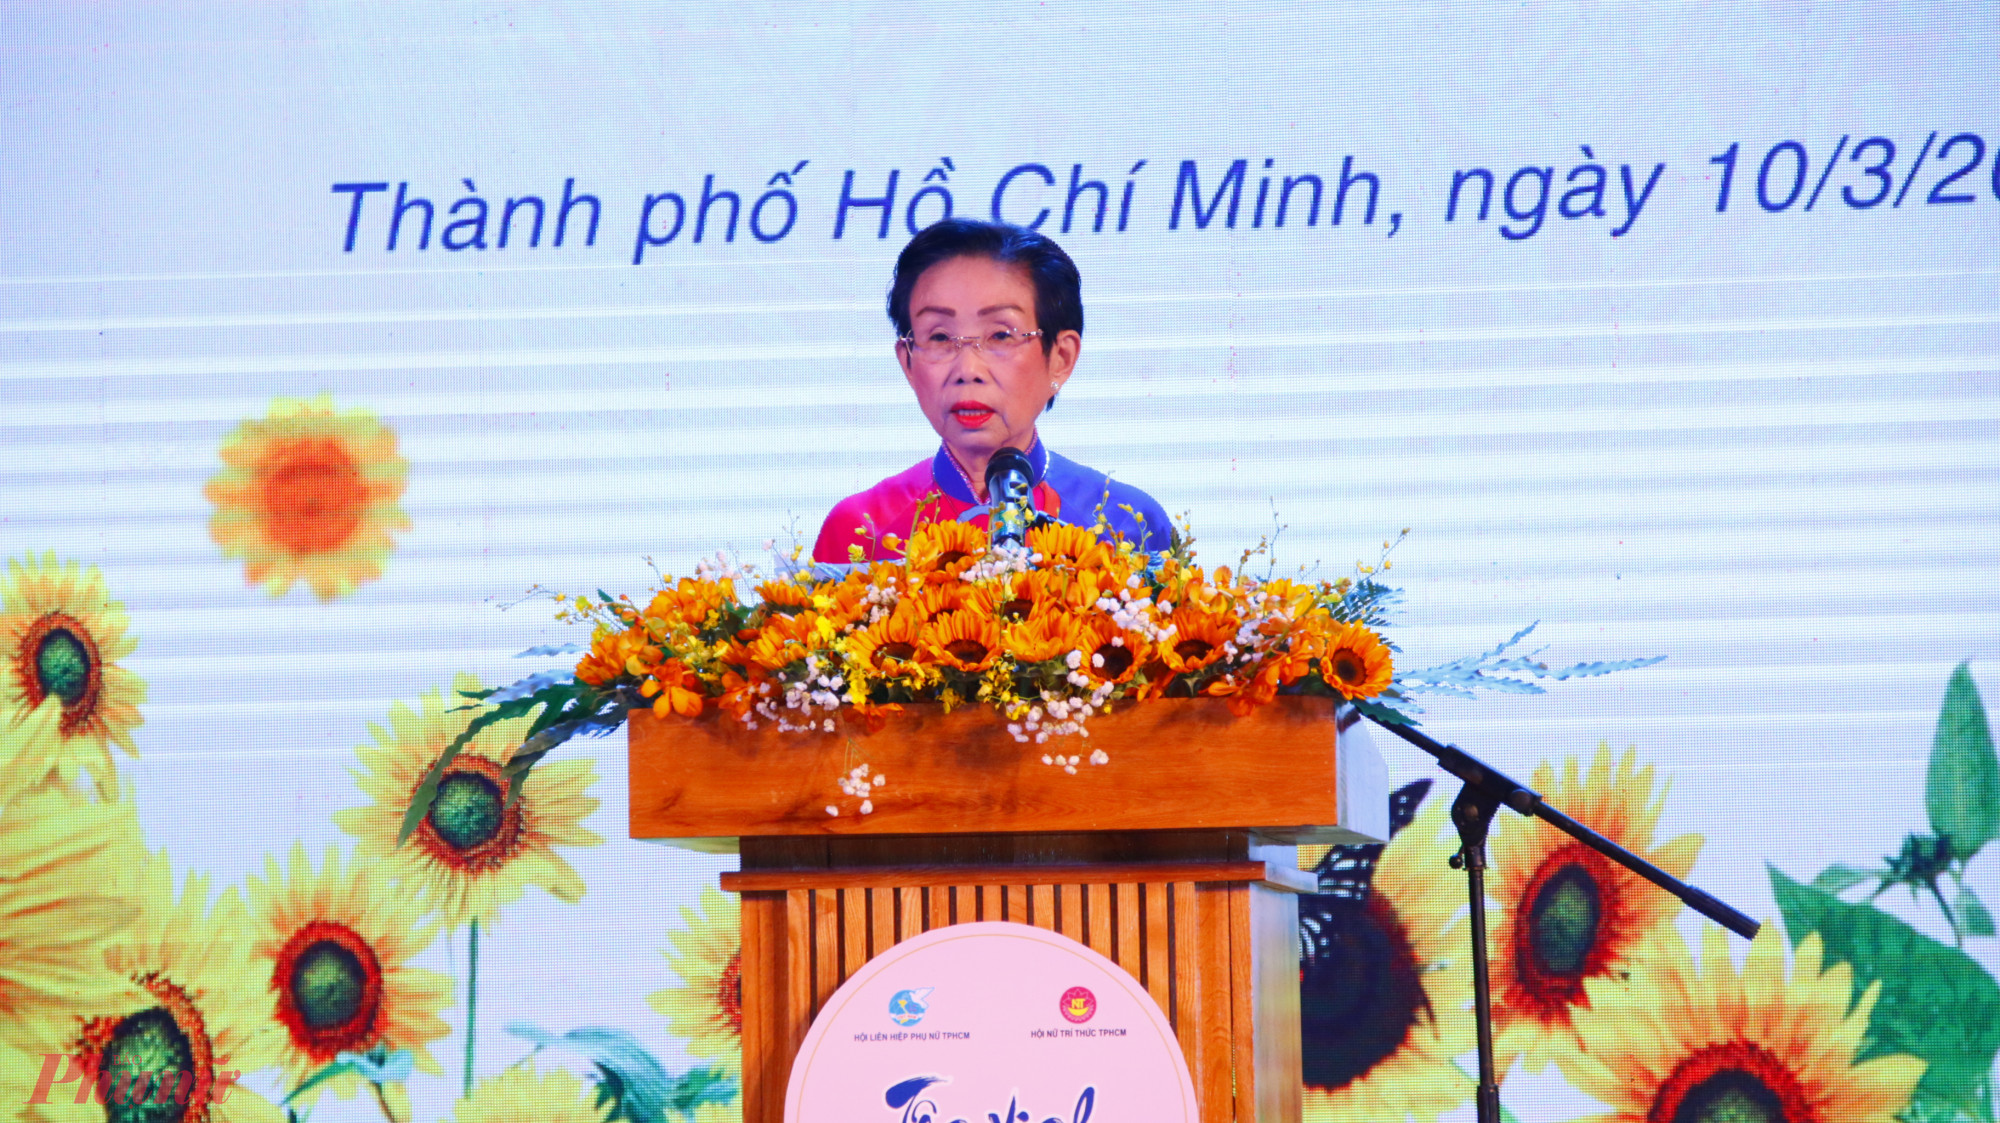 PGS.TS Trương Thị Hiền - Chủ tịch Hội Nữ trí thức TPHCM phát biểu tại buổi lễ.